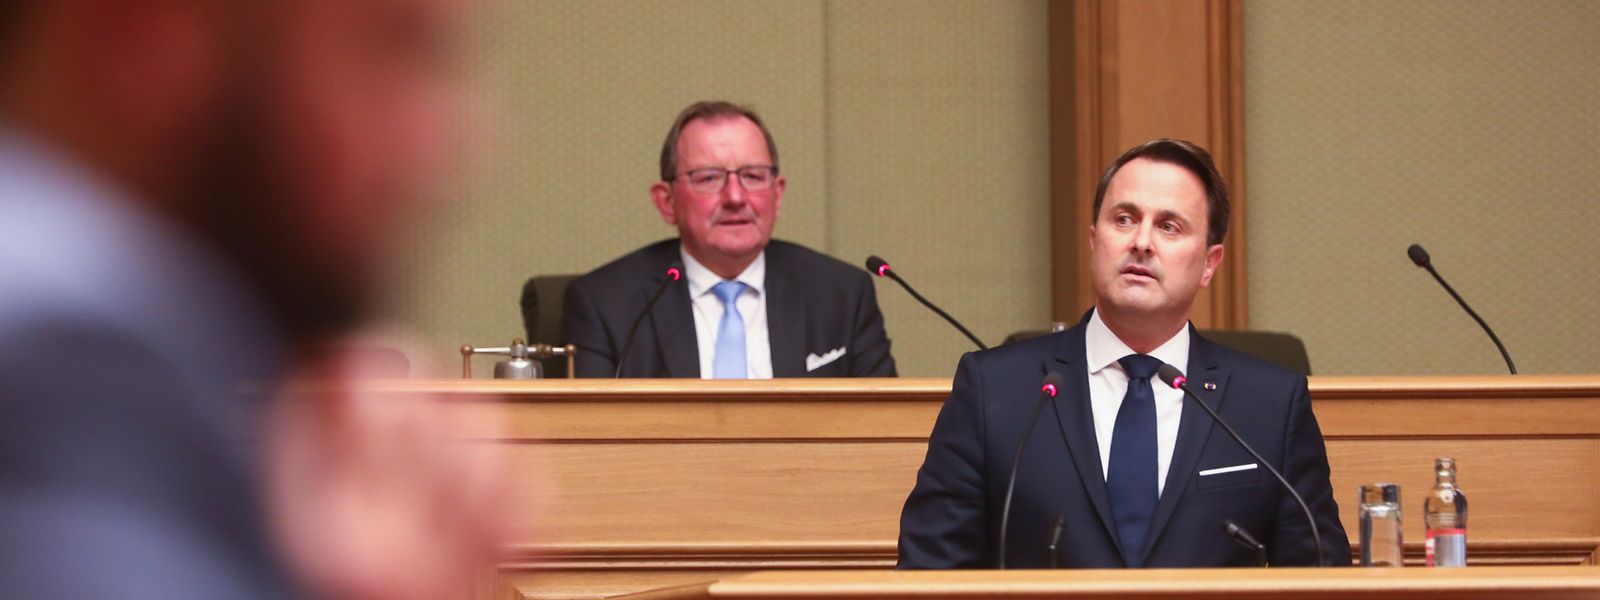 Le Premier ministre Xavier Bettel a livré sa vision pour le Luxembourg de demain, le 8 octobre devant la Chambre.